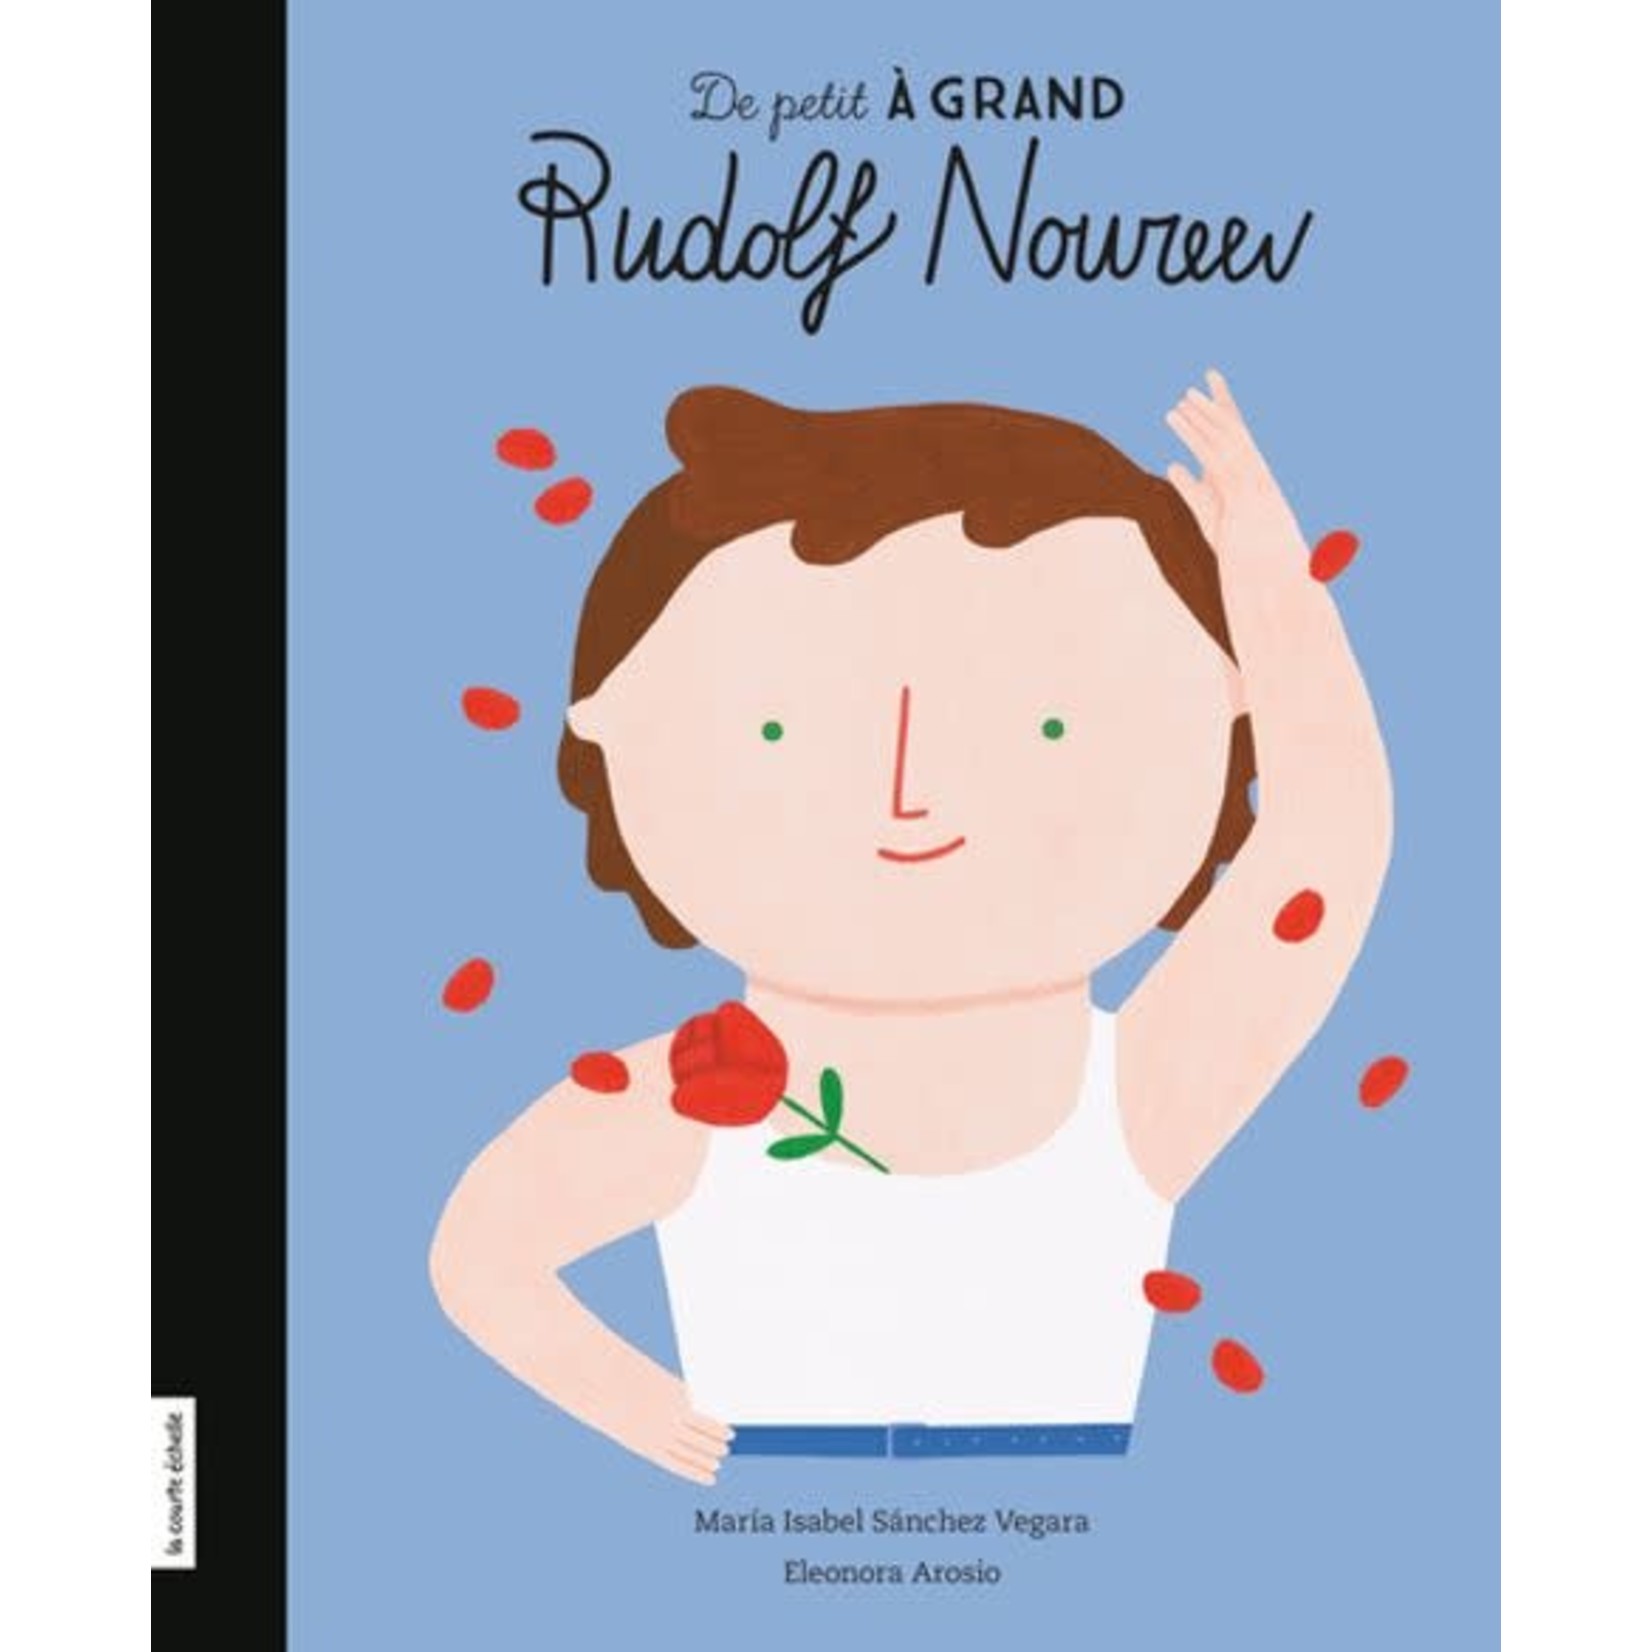 La Courte Échelle (Éditions) LA COURTE ÉCHELLE - De petit à grand : Rudolph Noureev